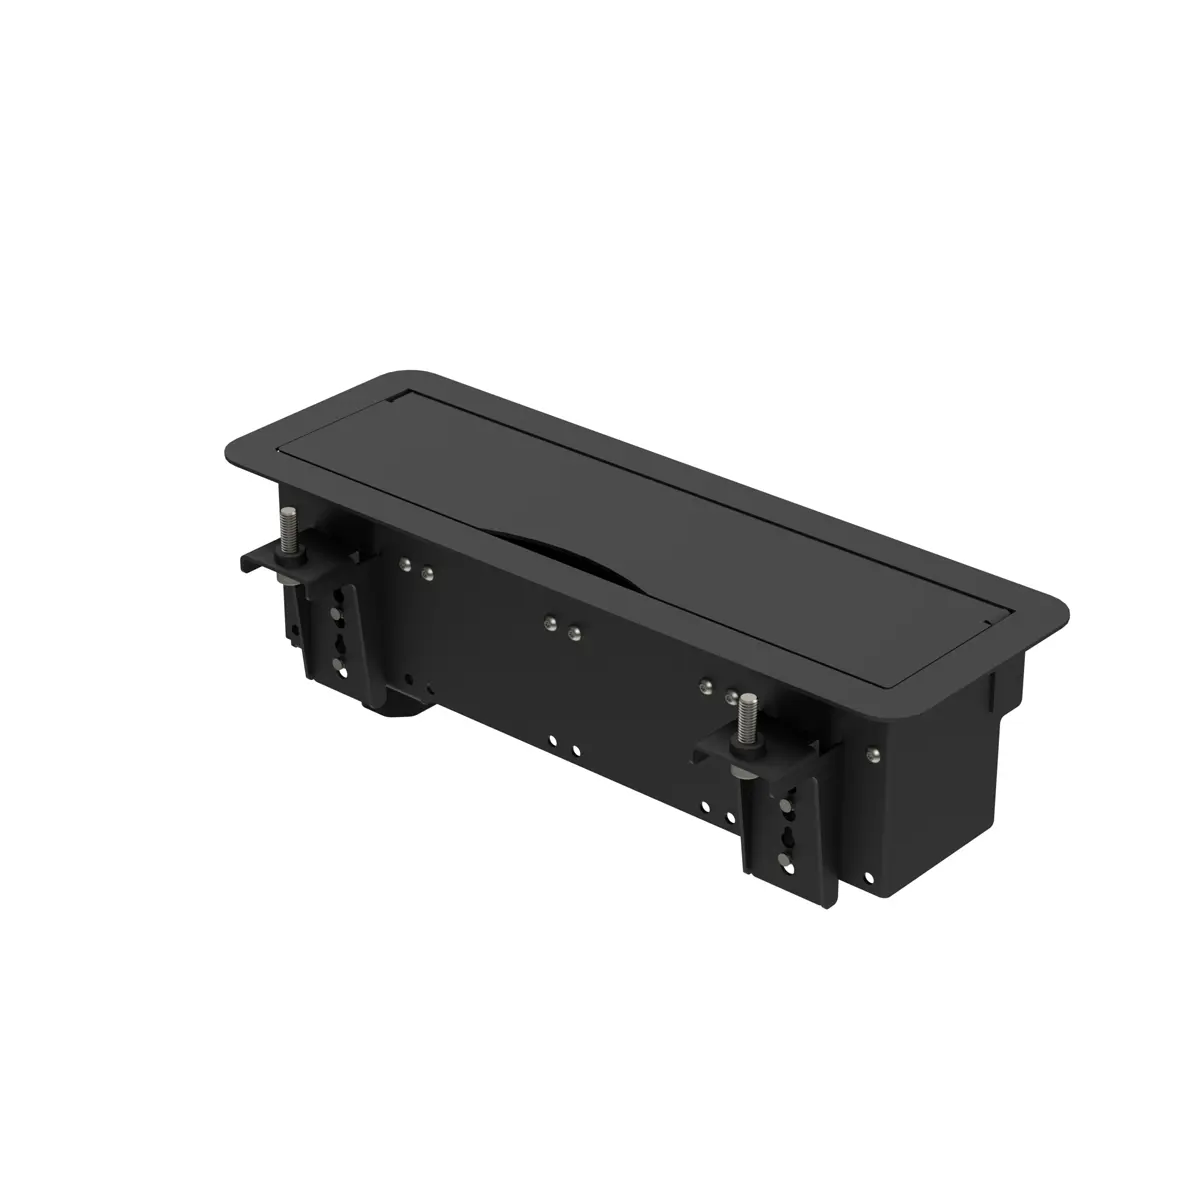 Boîtier de table Handy Box ALPHA, rallongé de 2 modules, équipé d'un secteur et 3 passe-câbles